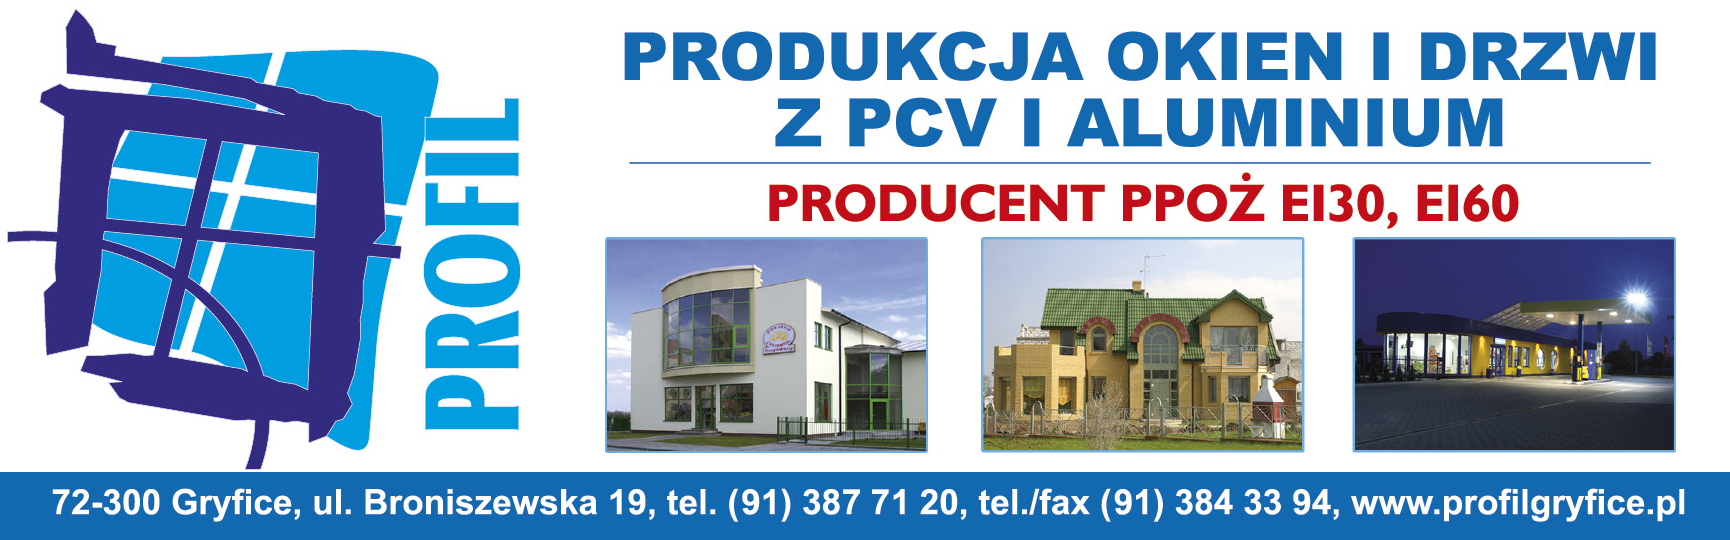 PROFIL Gryfice Produkcja Okien i Drzwi z PCV i Aluminium